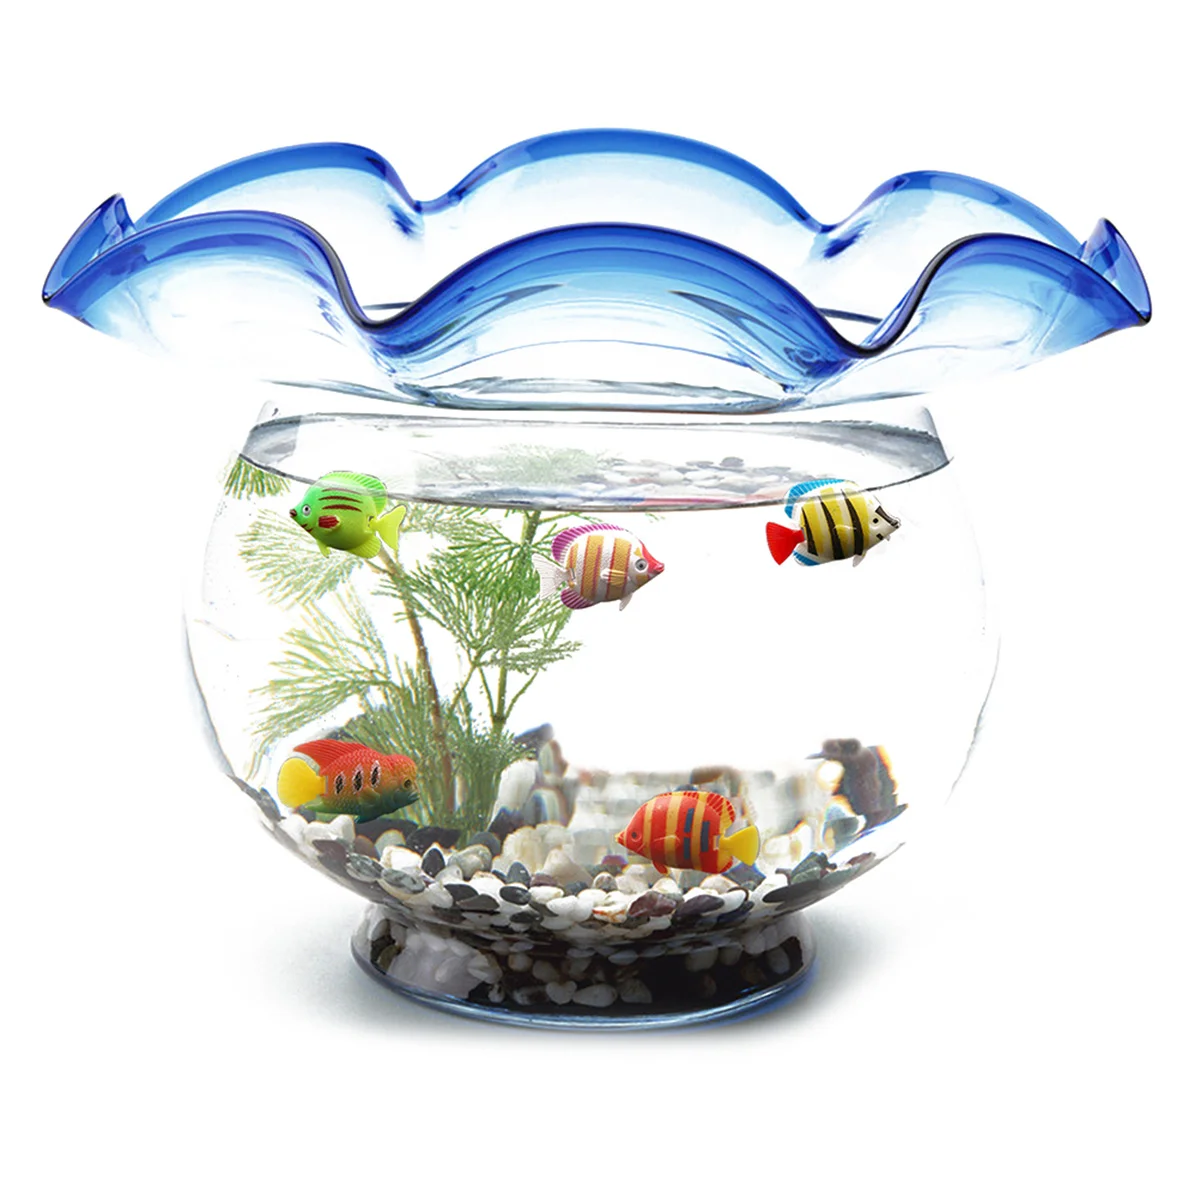 Декоративный аквариум купить. Аквариум с искусственными рыбками. Пластиковый аквариум для рыбок. Декоративный аквариум с искусственными. Пластмассовые рыбки для аквариума.